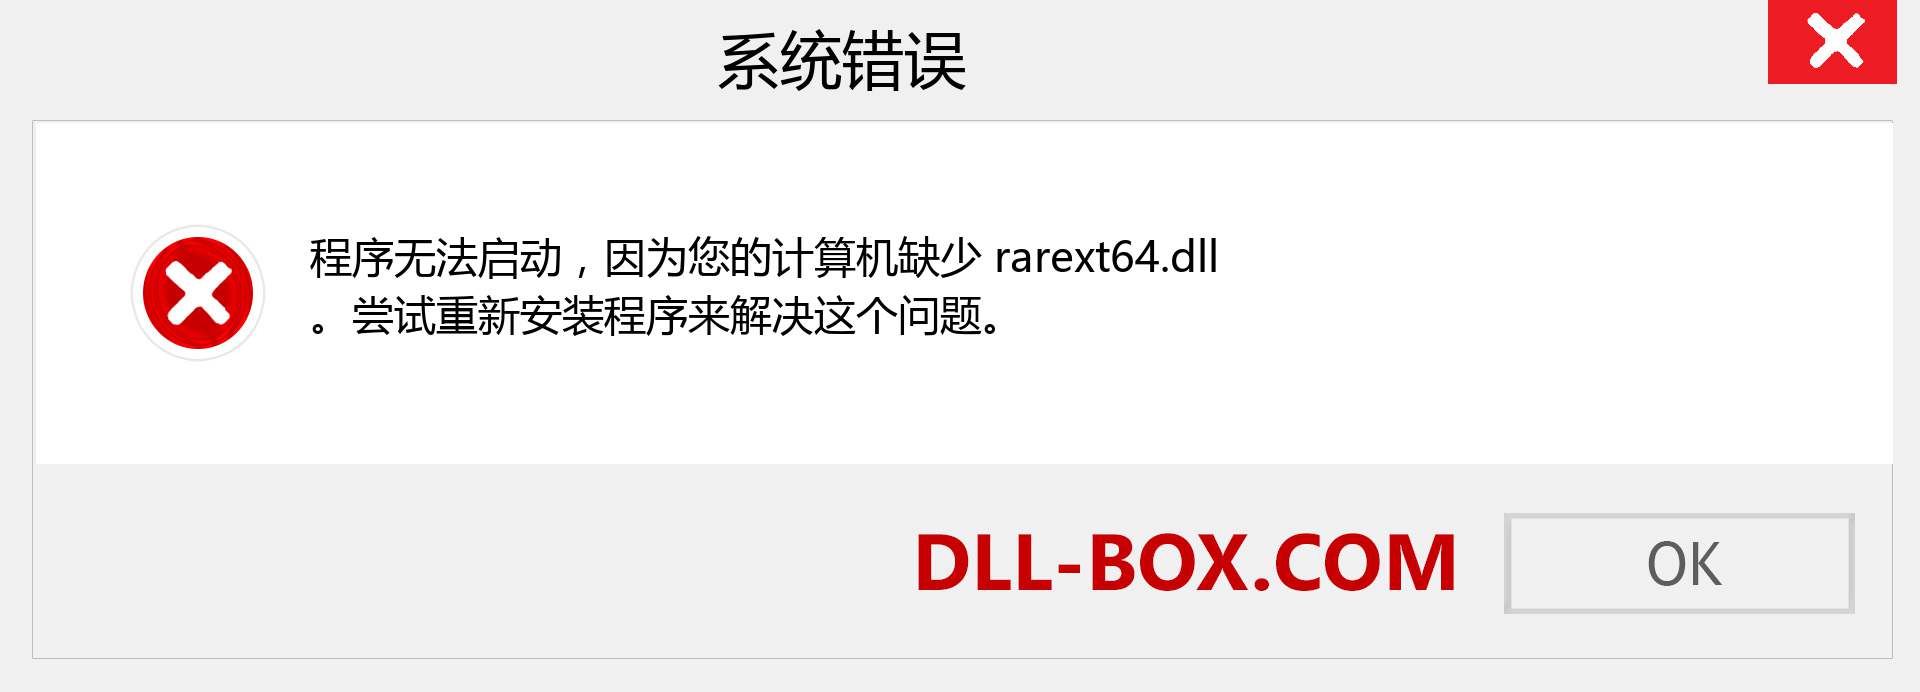 rarext64.dll 文件丢失？。 适用于 Windows 7、8、10 的下载 - 修复 Windows、照片、图像上的 rarext64 dll 丢失错误